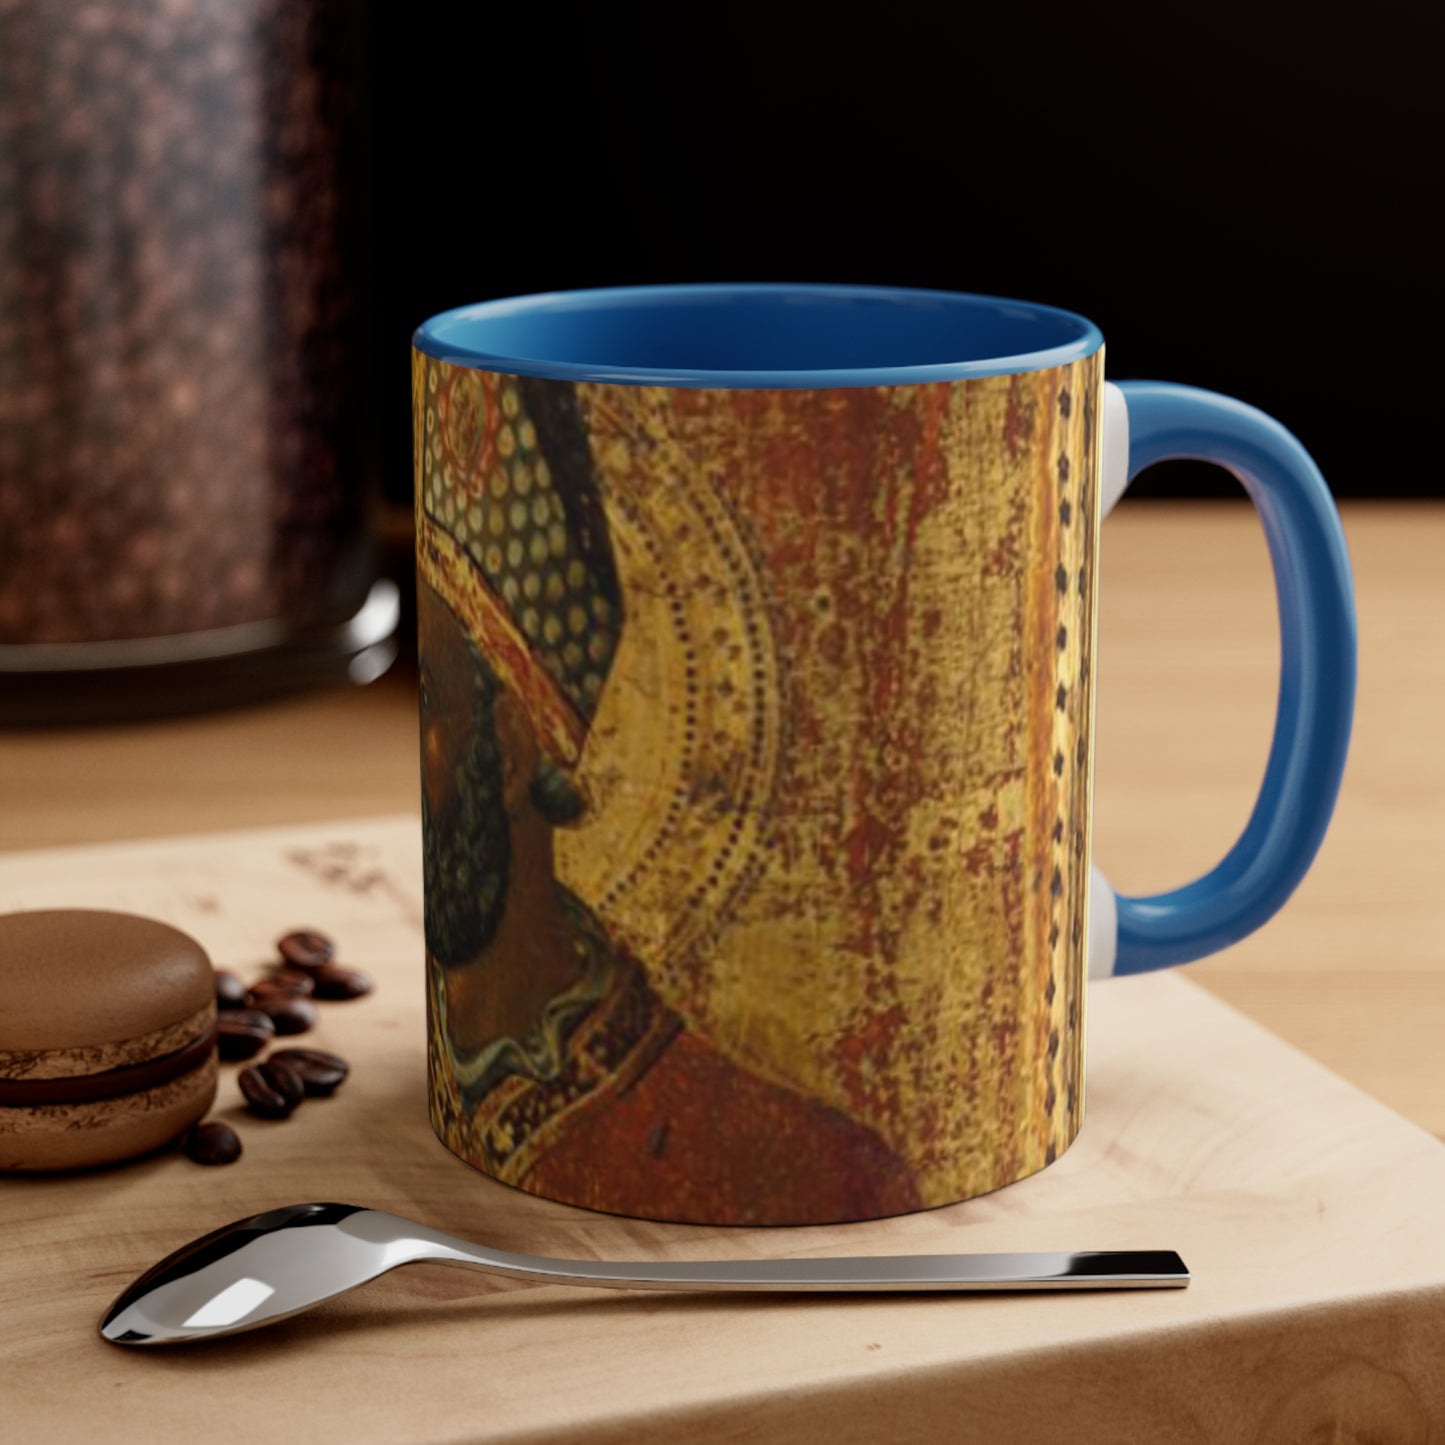 Saint Nicholas-Accent Coffee Mug, 11oz